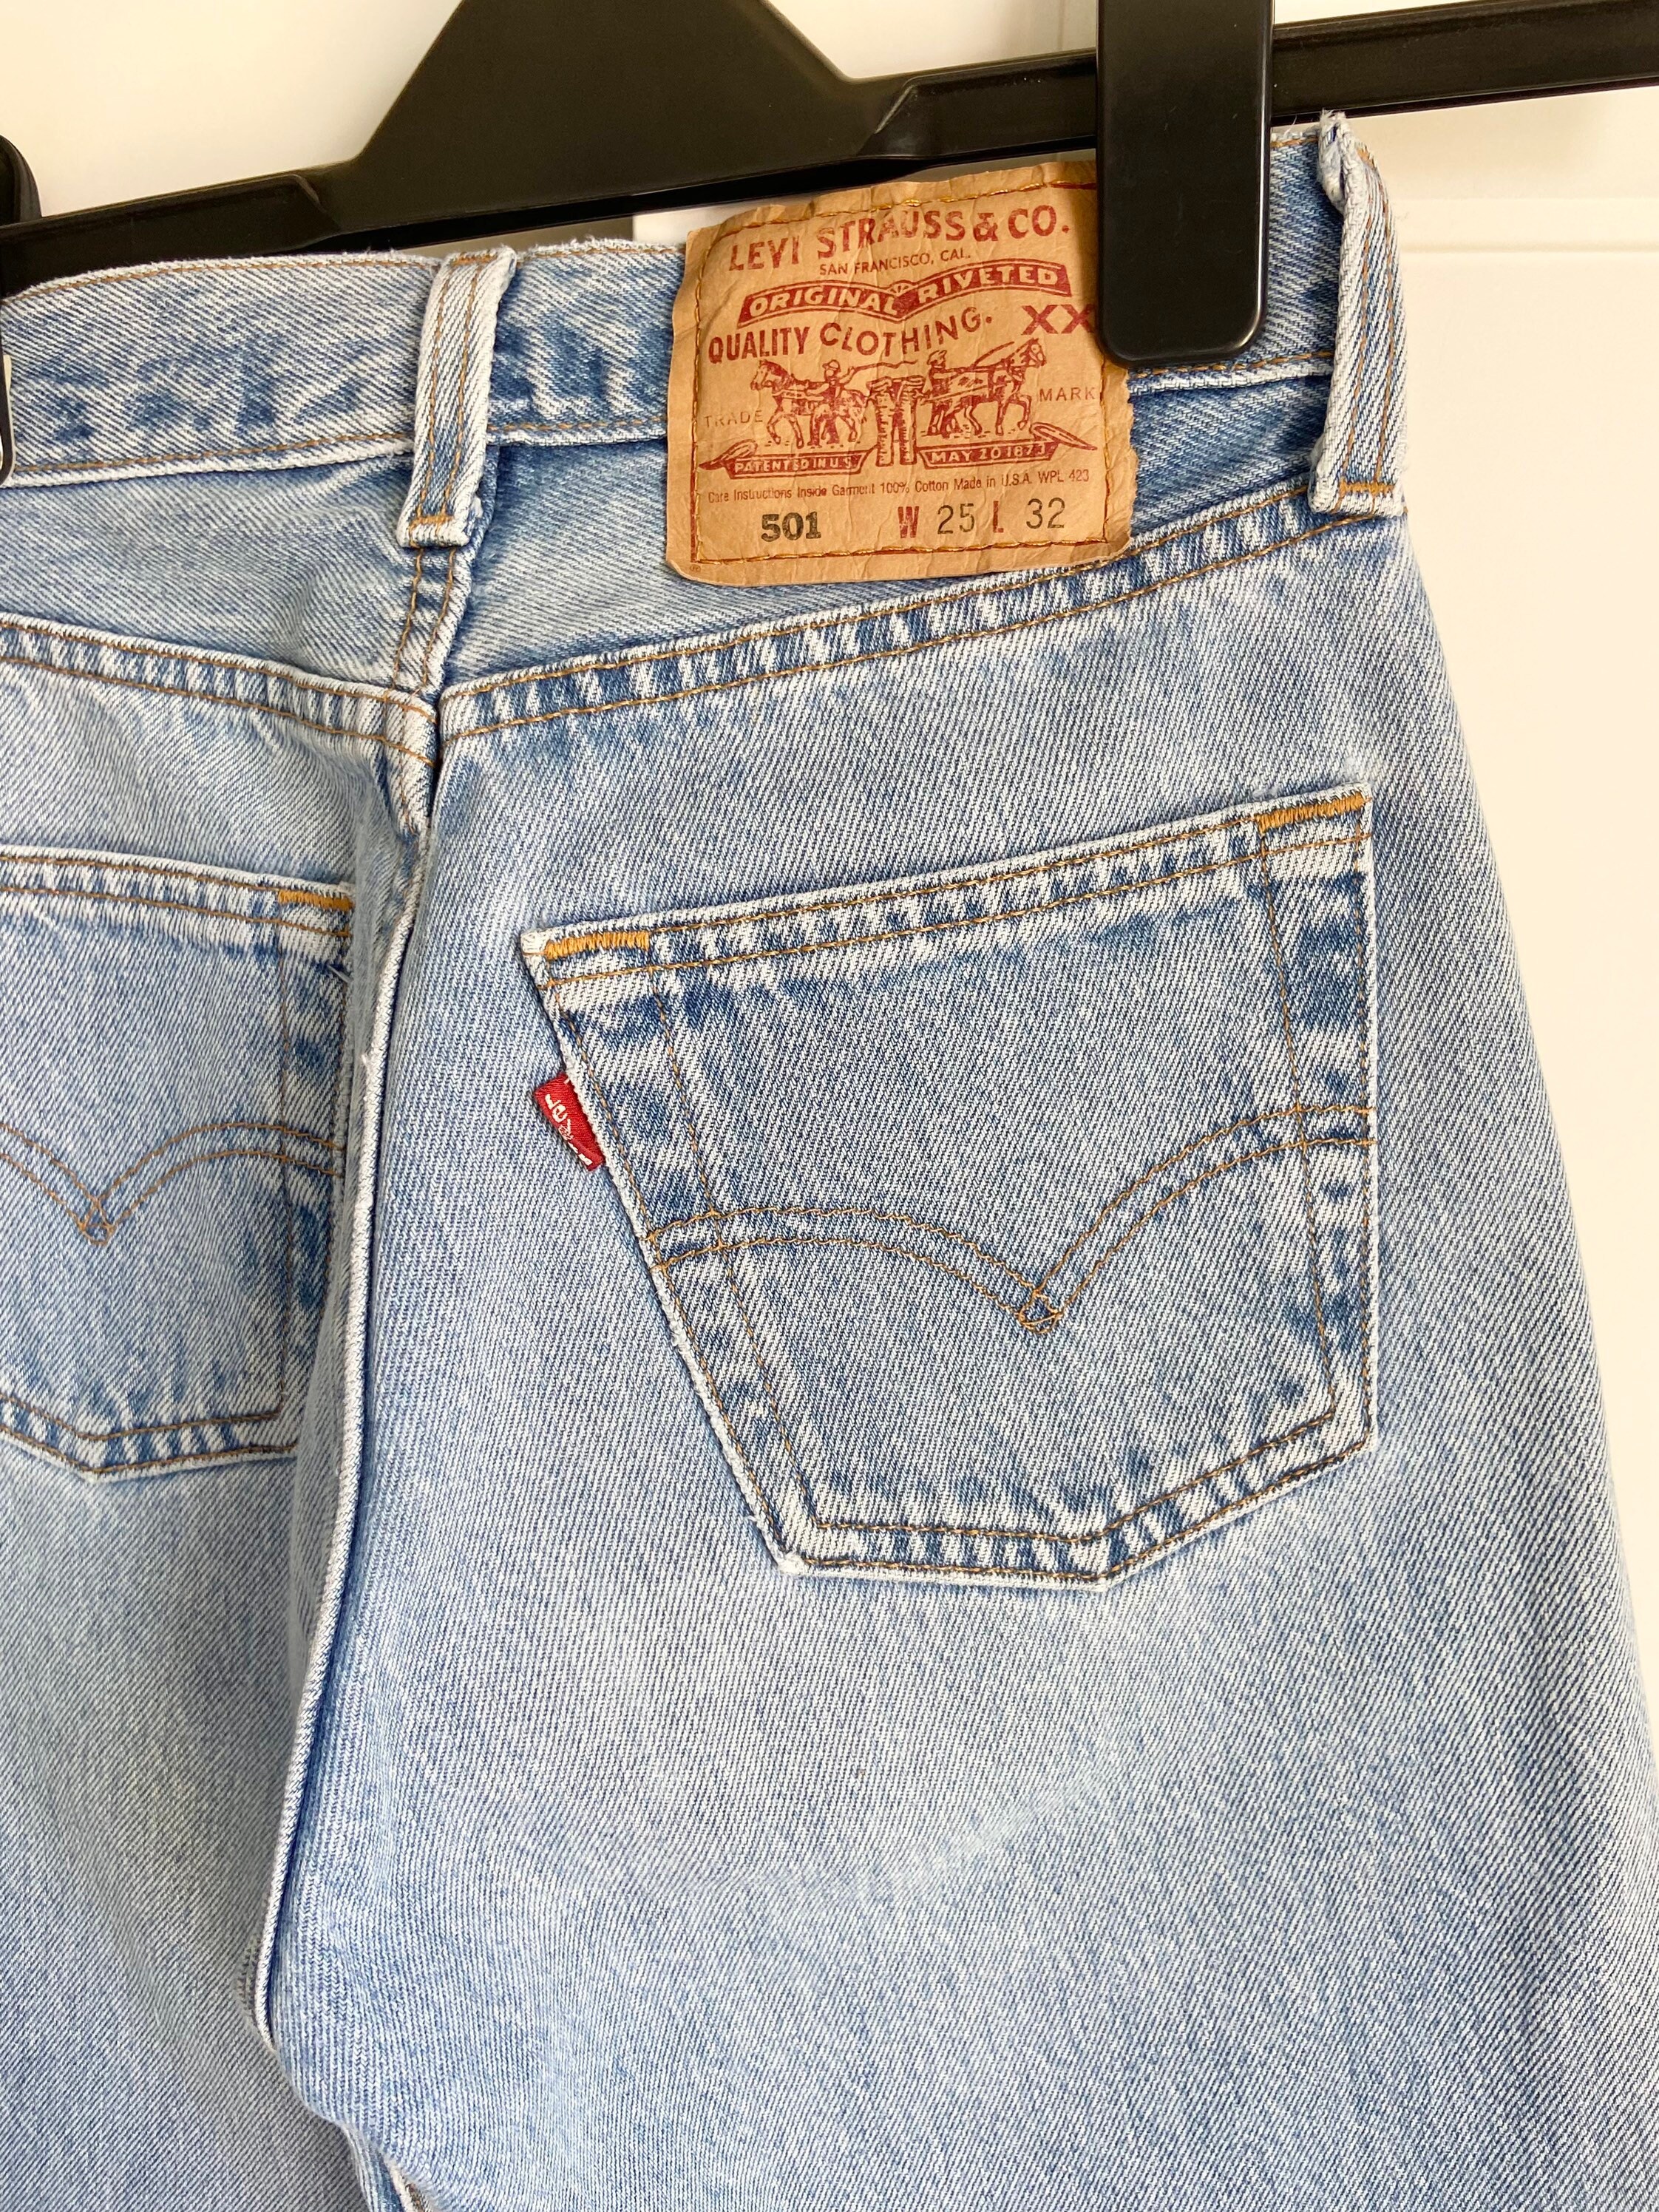 Abbigliamento Abbigliamento genere neutro per adulti Jeans Vintage Levi's 501 24" vita made in USA per donna 